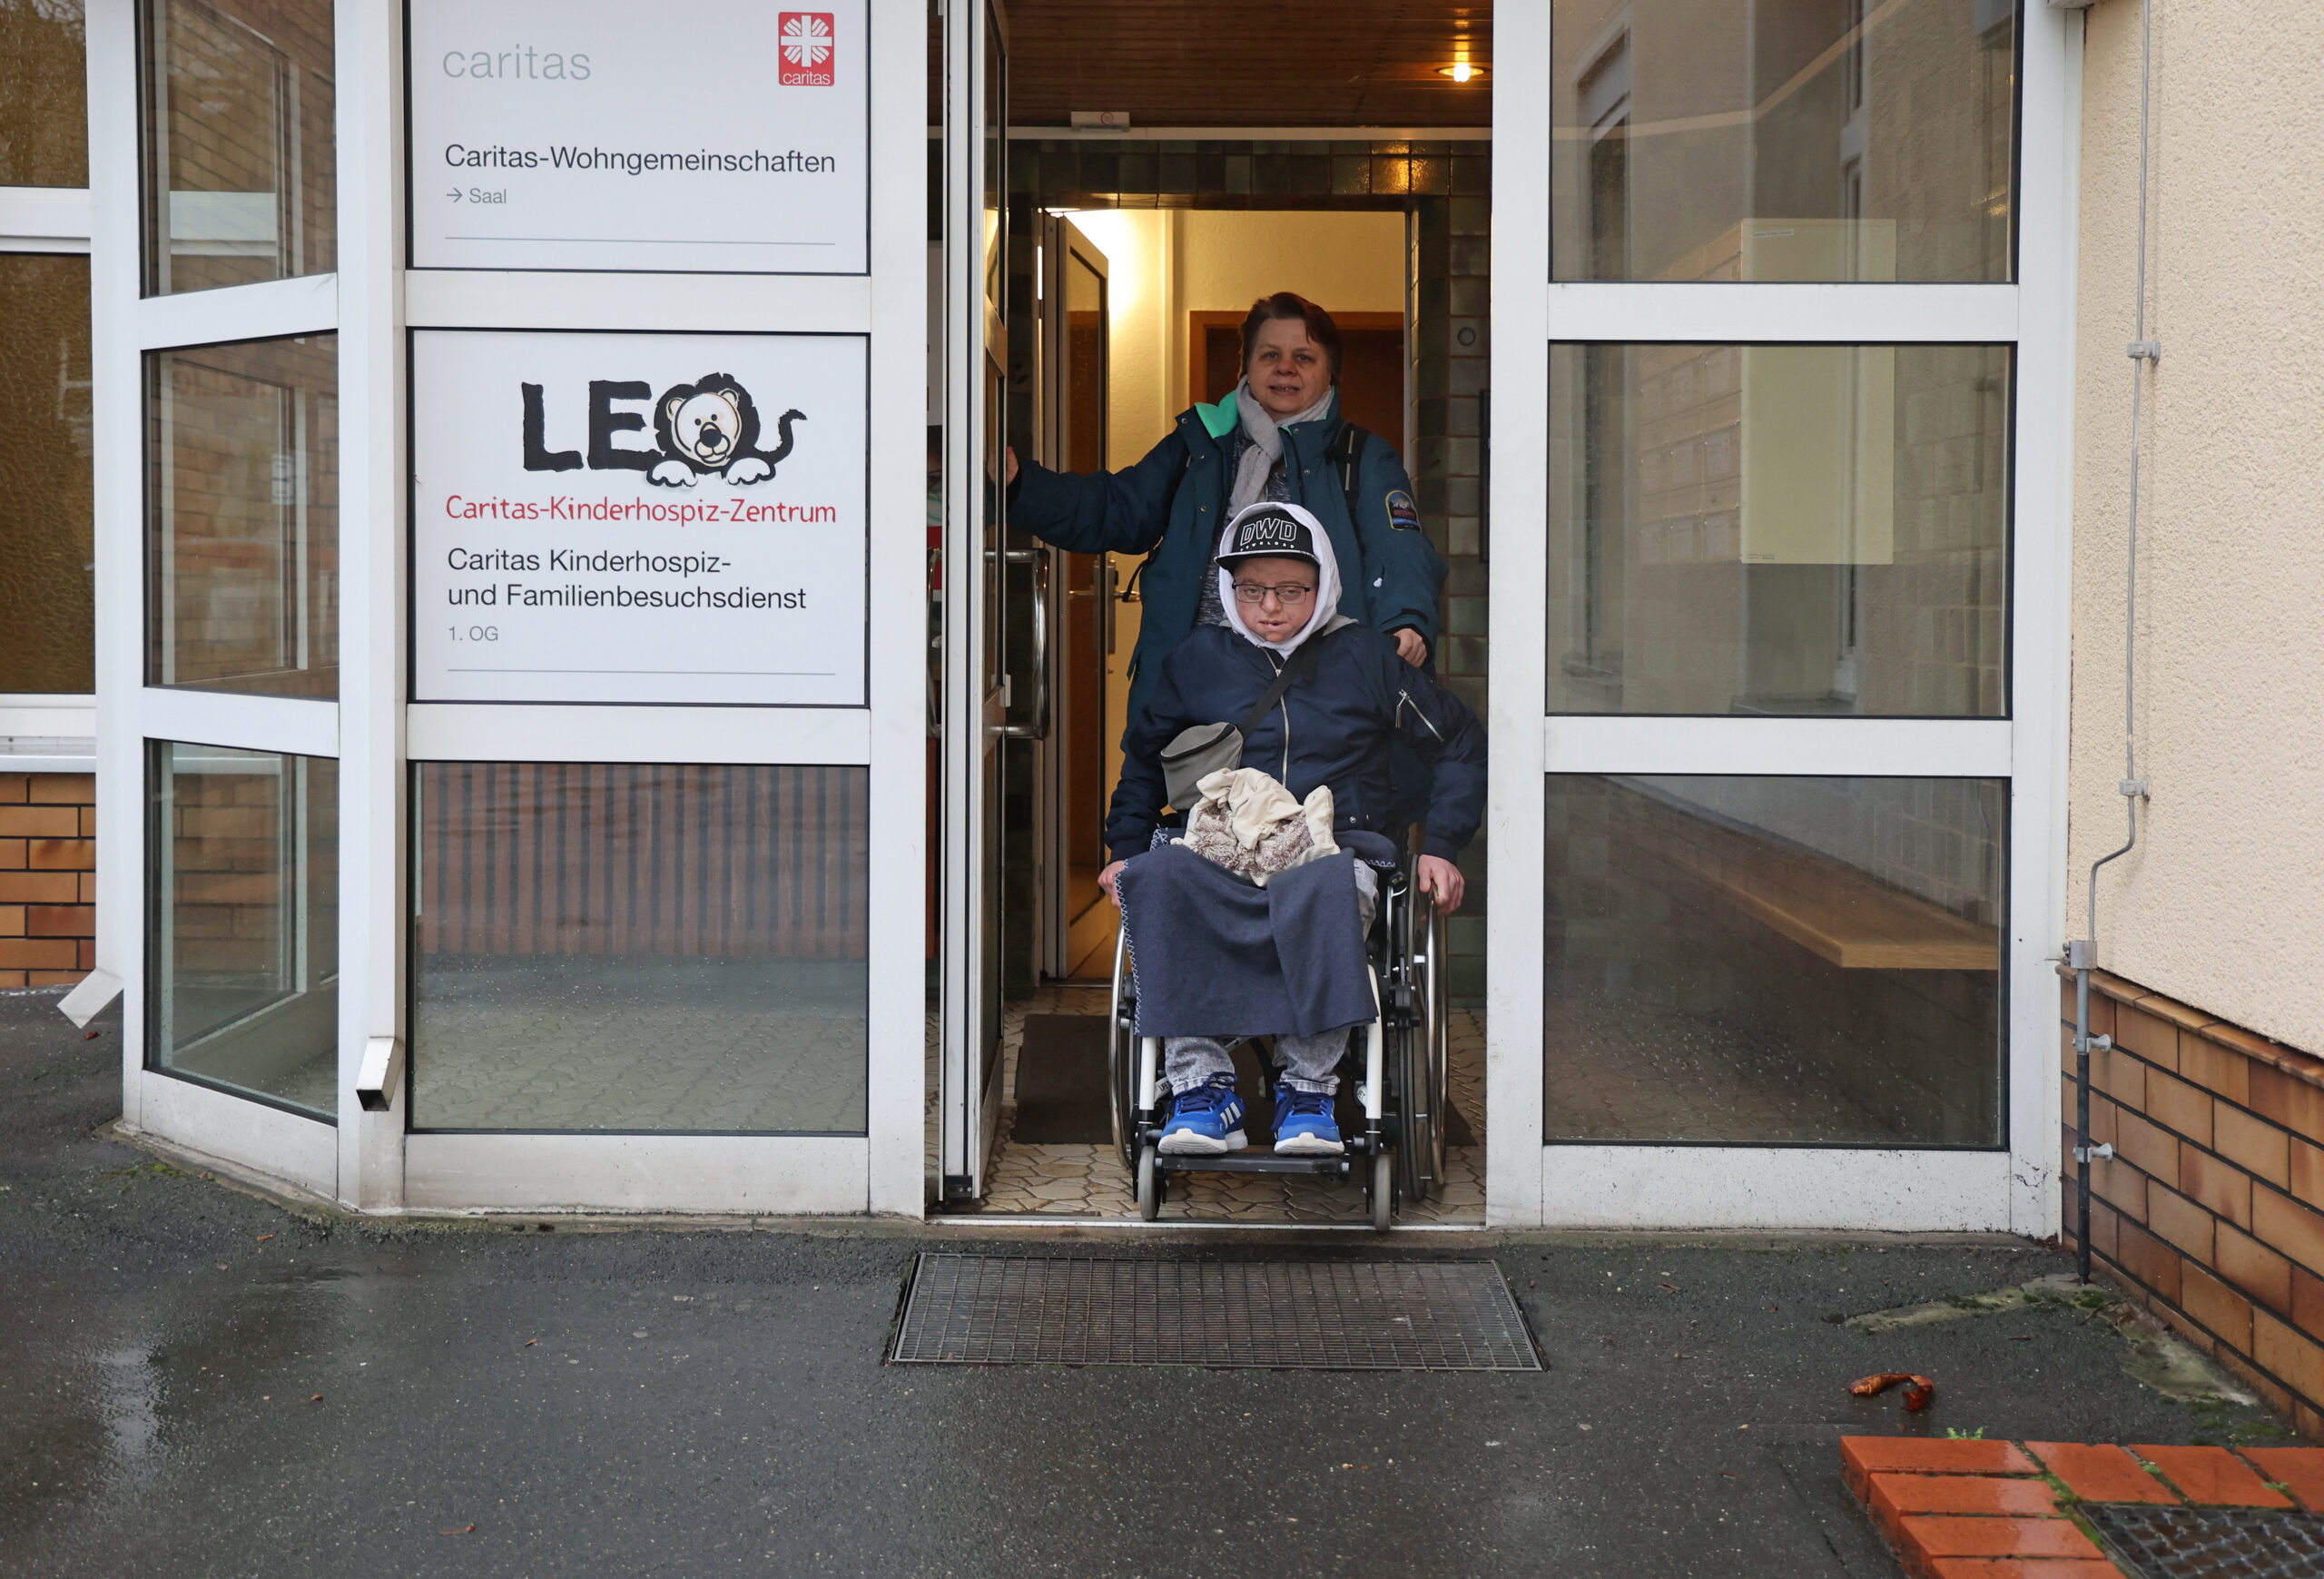 Luca Campos und seine Mutter Heike am Eingang des Kinderhospiz-Zentrums LEO